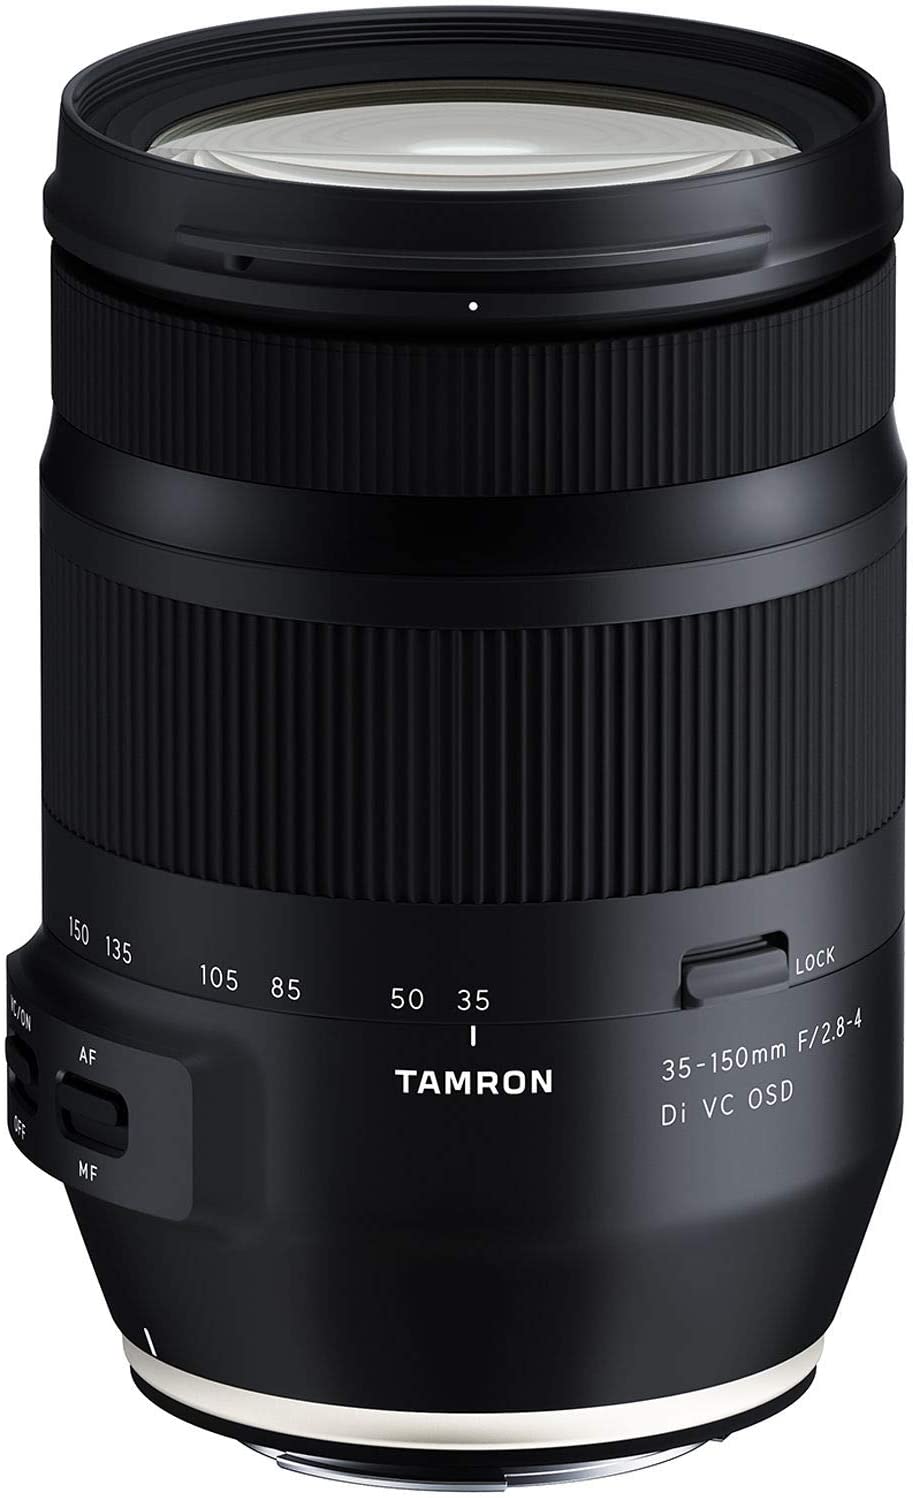 Tamron 35-150mm F/2.8-4 Di VC OSD For Nikon